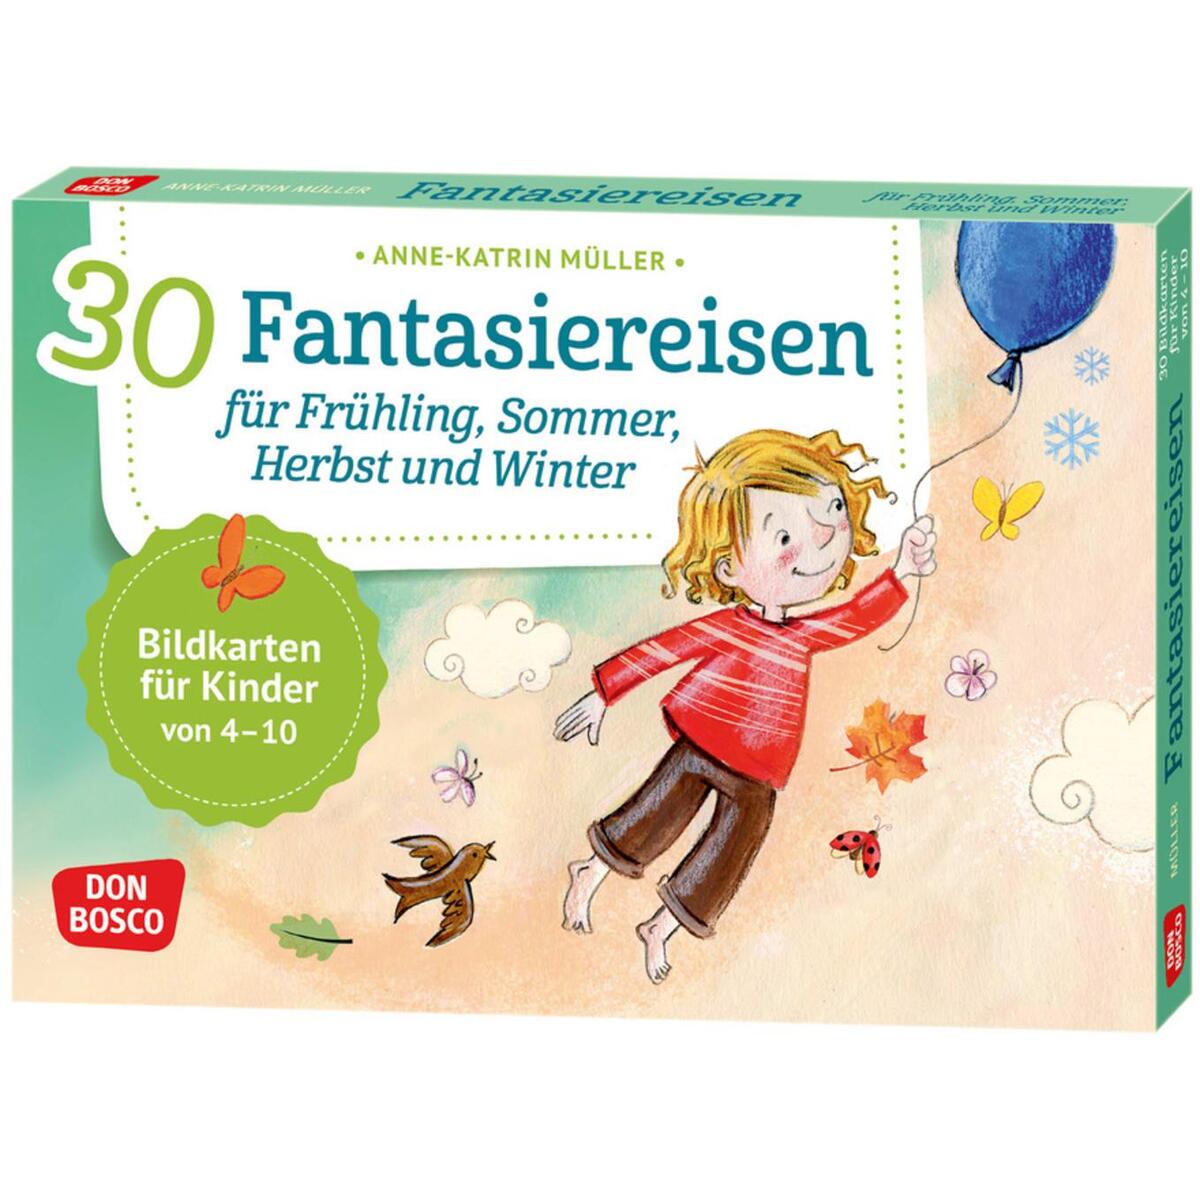 30 Fantasiereisen für Frühling, Sommer, Herbst und Winter von Don Bosco Medien GmbH